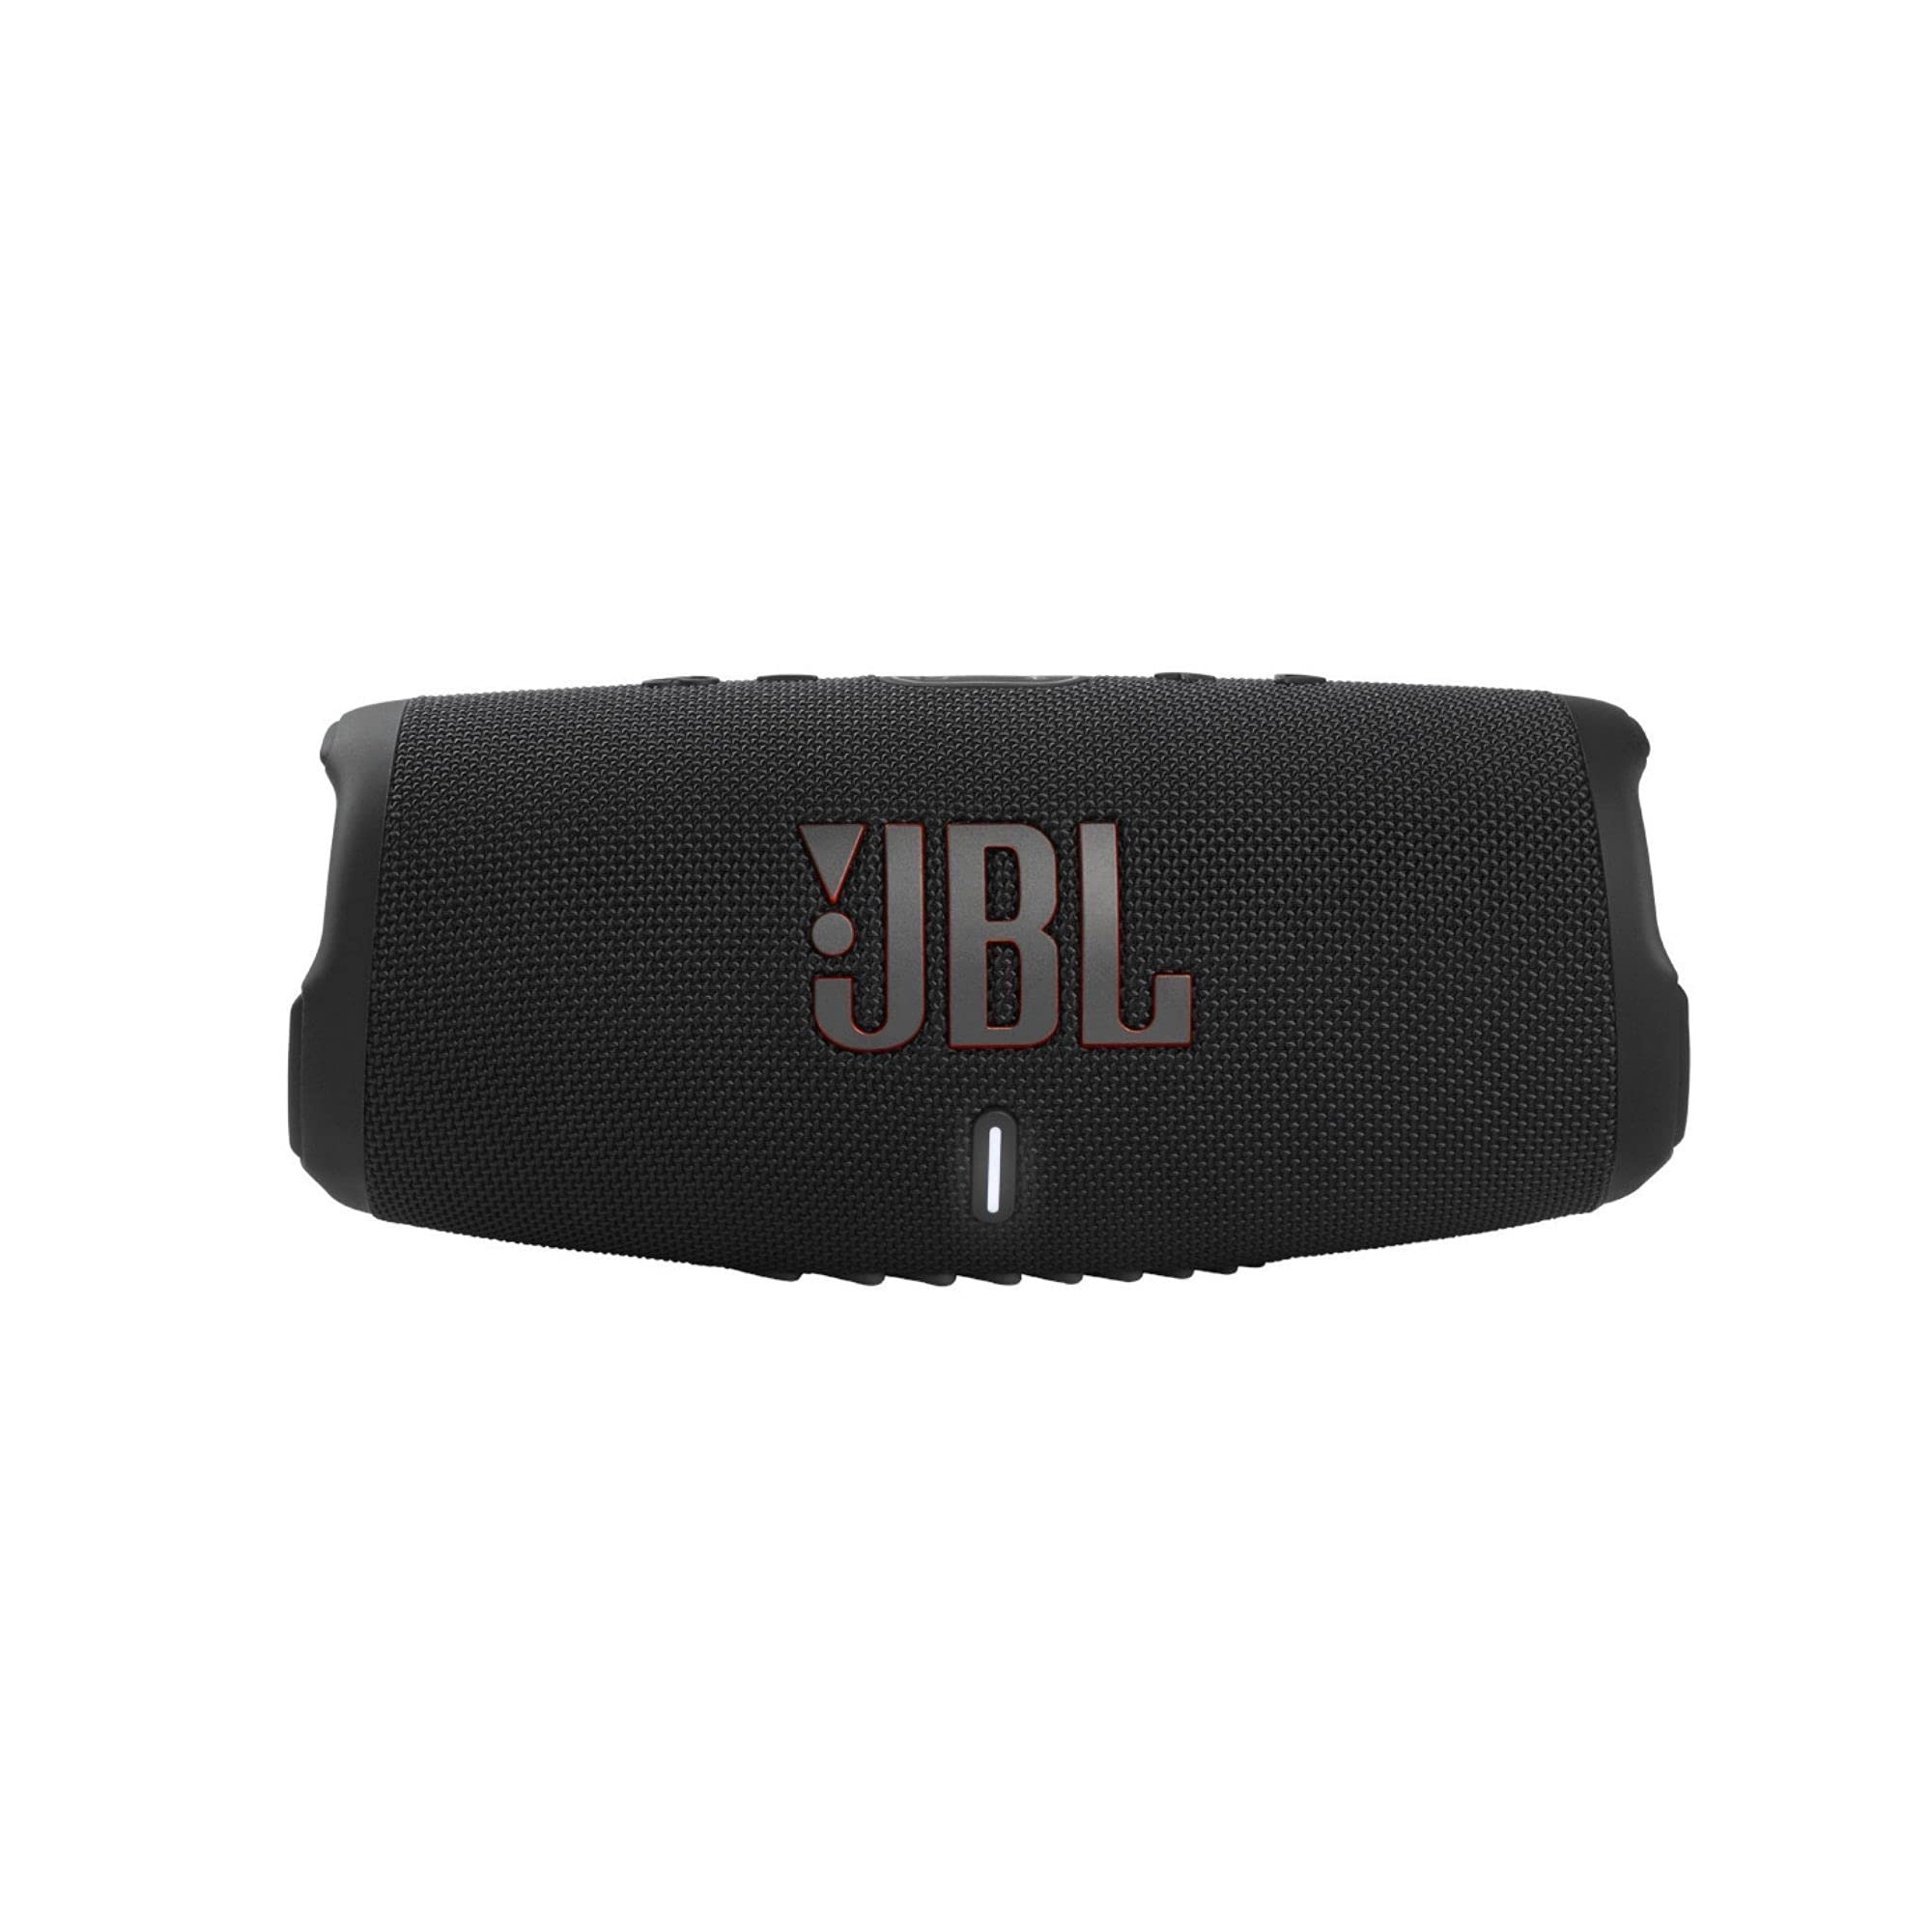 JBL Charge 5 - IP67 防水機能と USB 充電出力を備えたポータブル Bluetooth スピーカー